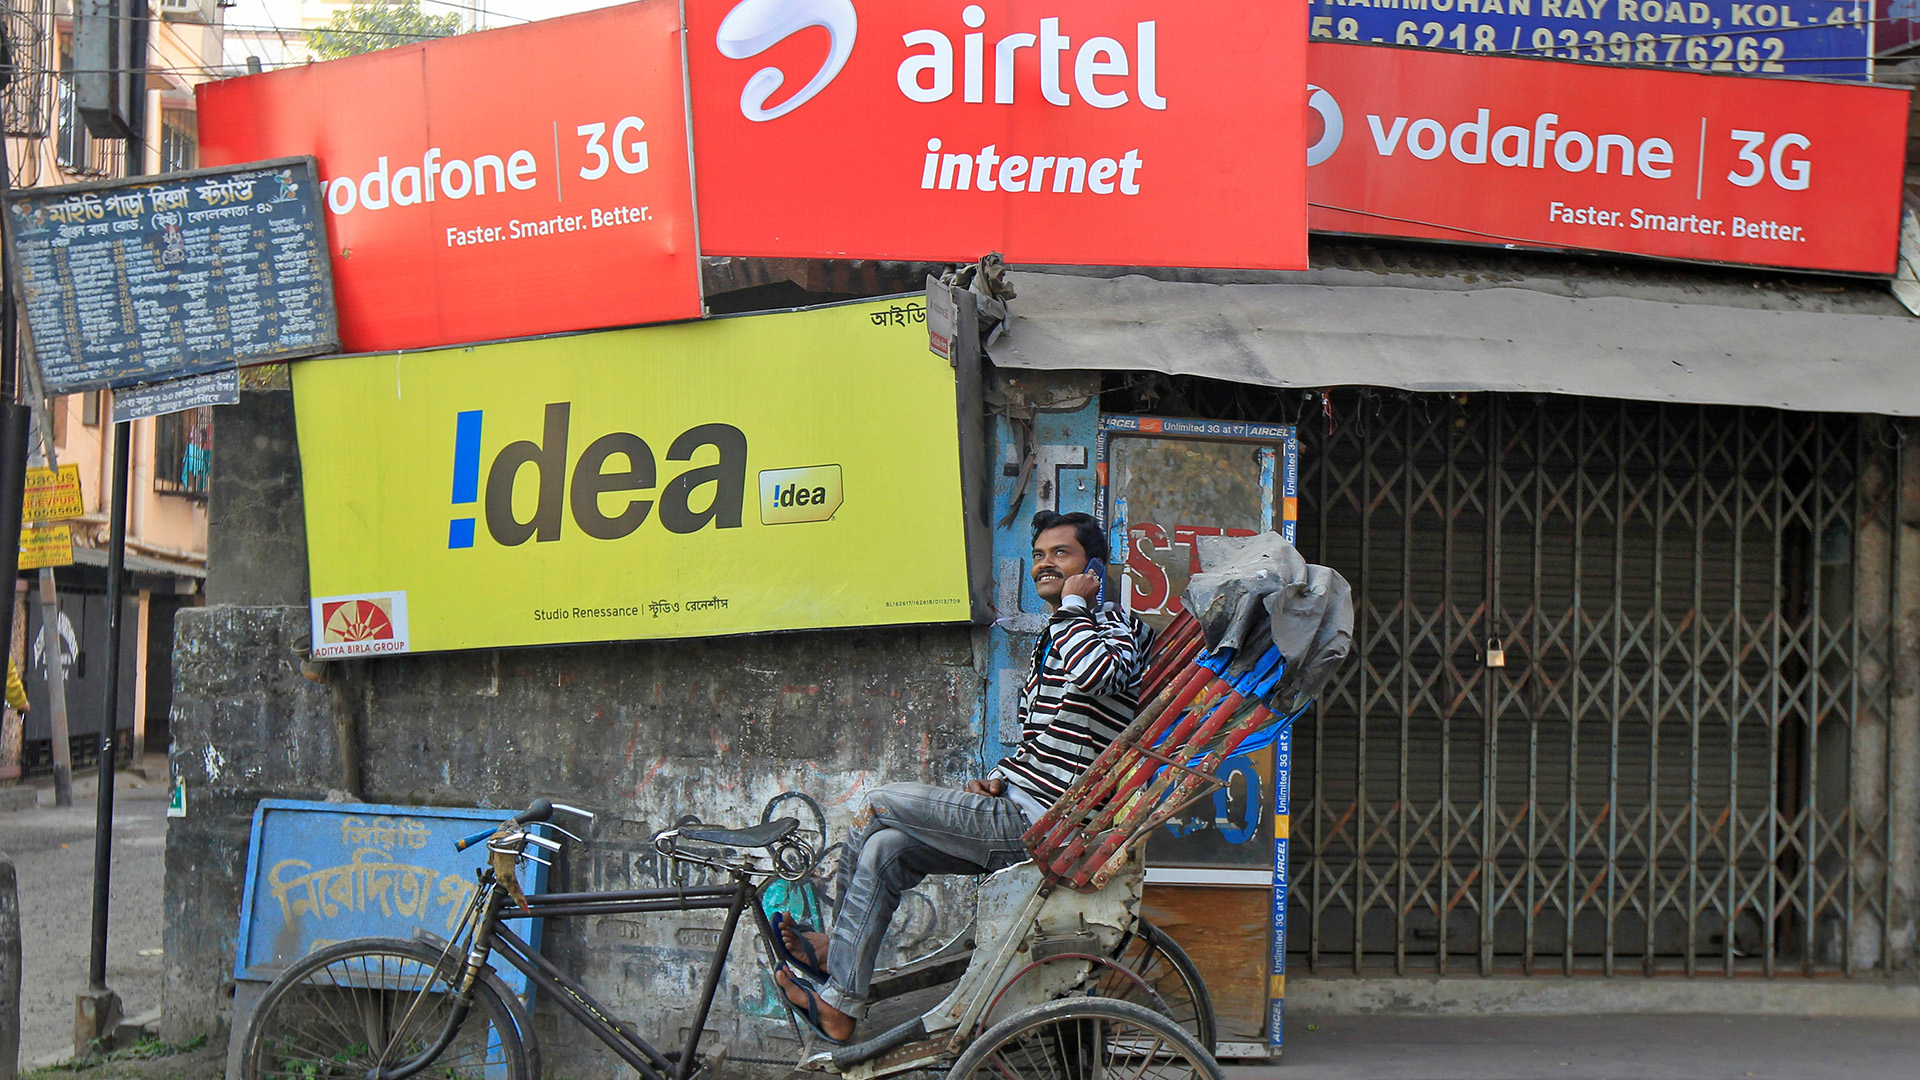 Vodafone India e Idea Cellular anuncian una fusión